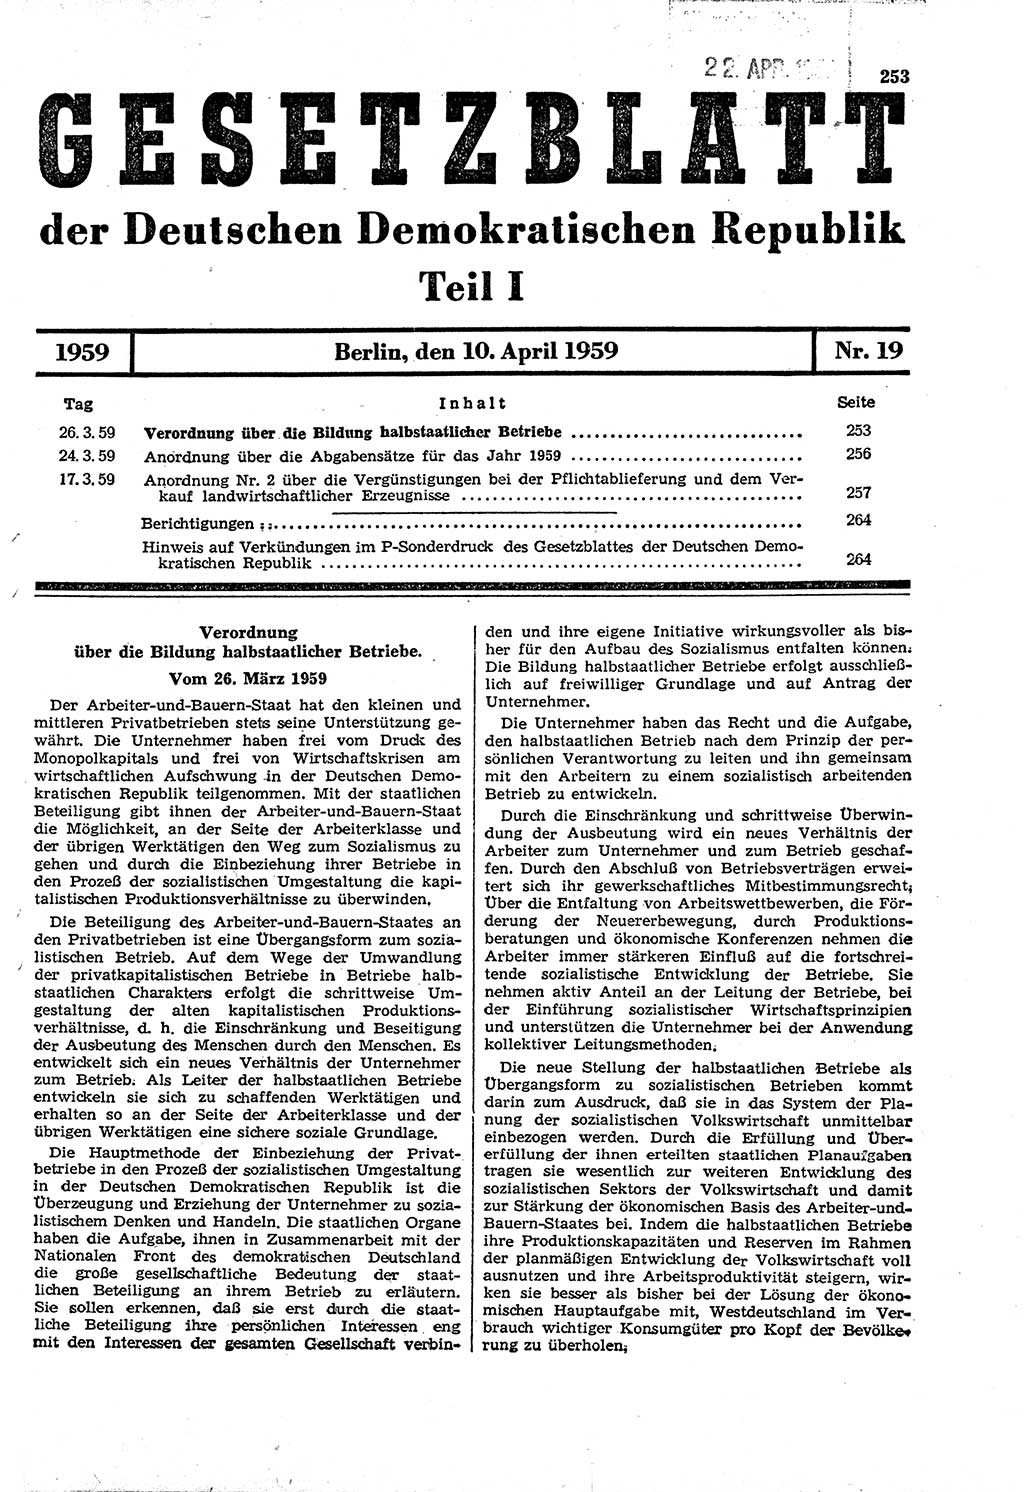 Gesetzblatt (GBl.) der Deutschen Demokratischen Republik (DDR) Teil Ⅰ 1959, Seite 253 (GBl. DDR Ⅰ 1959, S. 253)